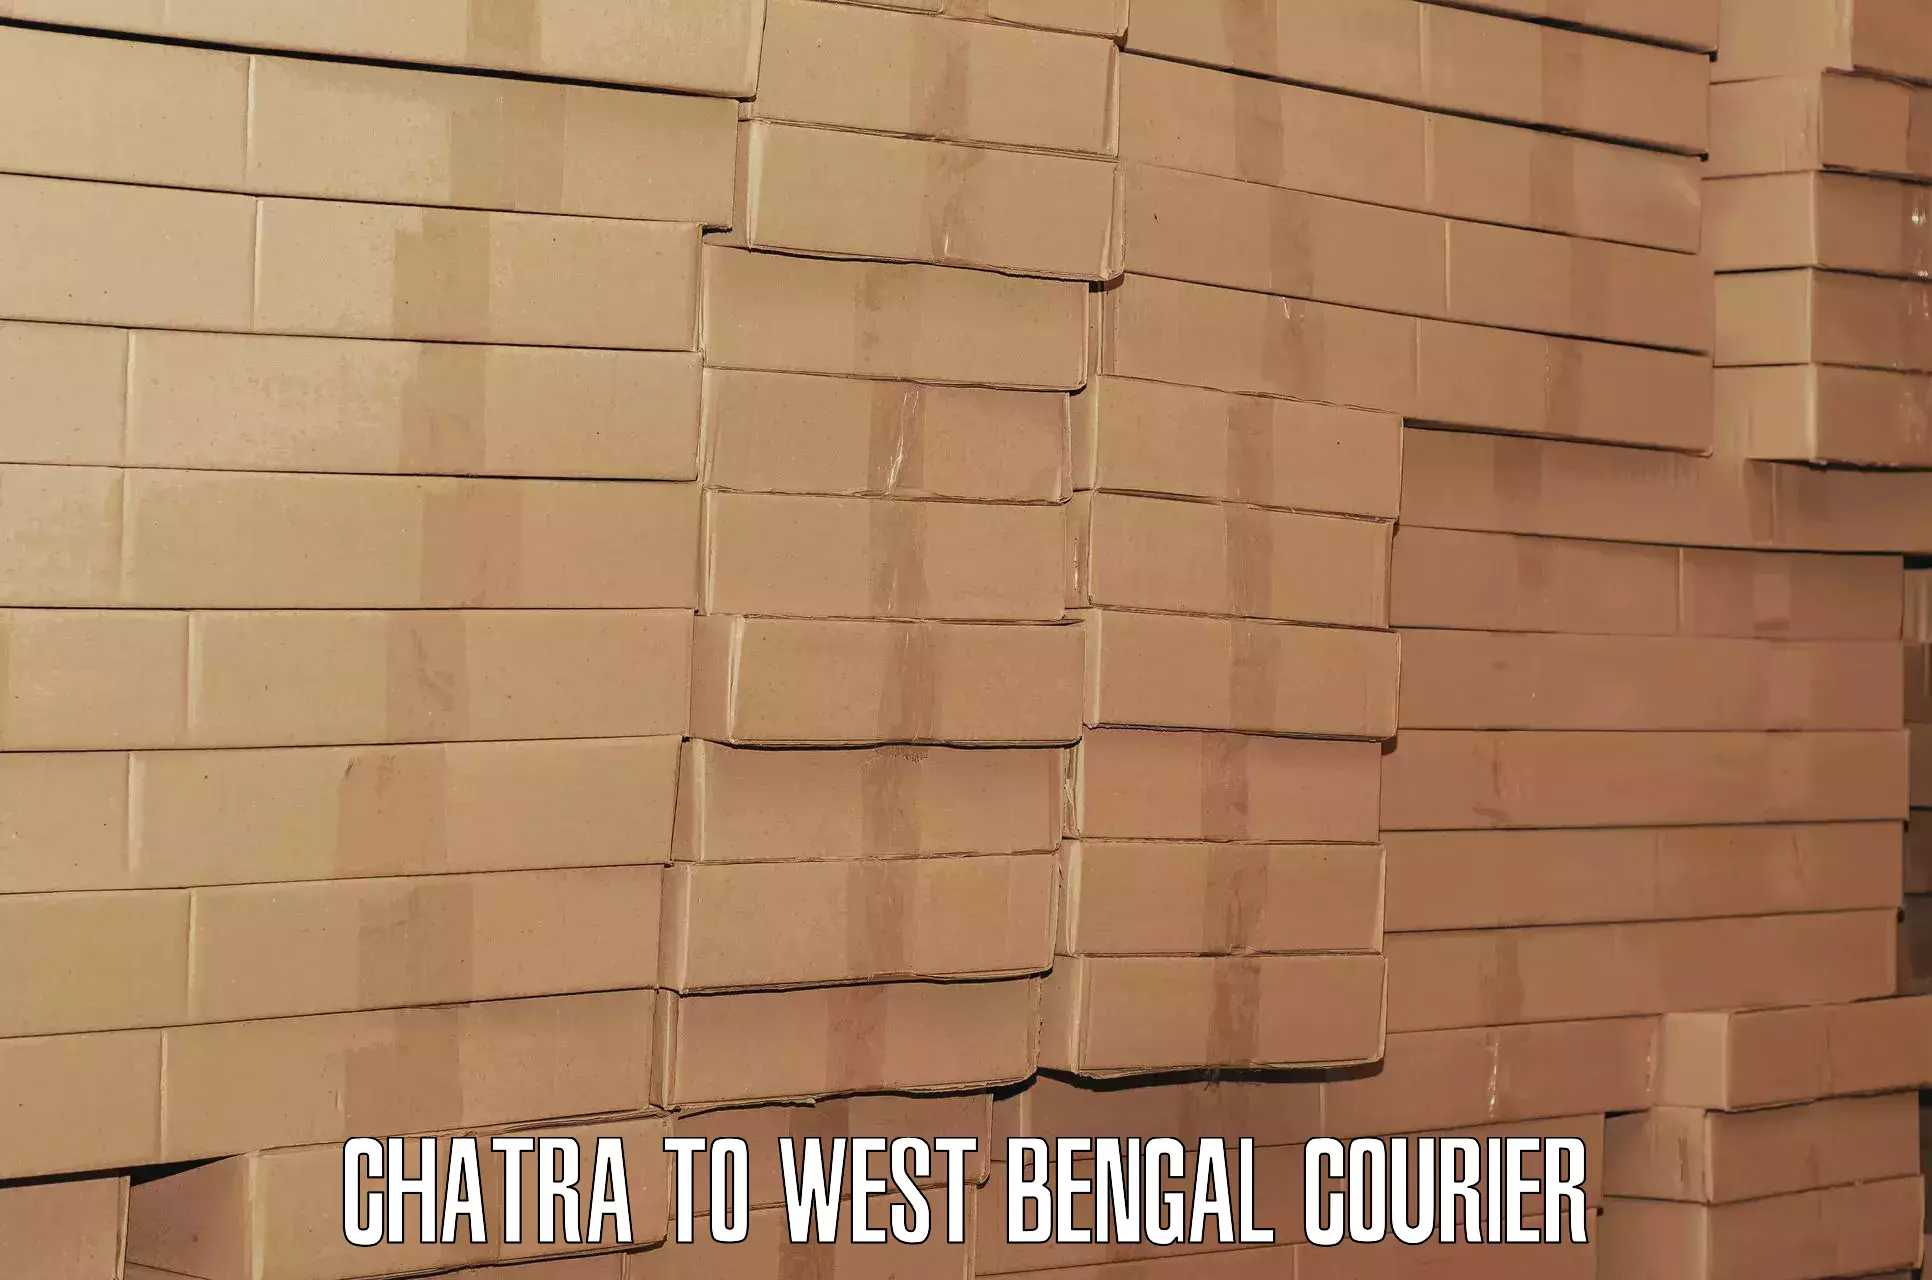 Door-to-door baggage service Chatra to West Bengal